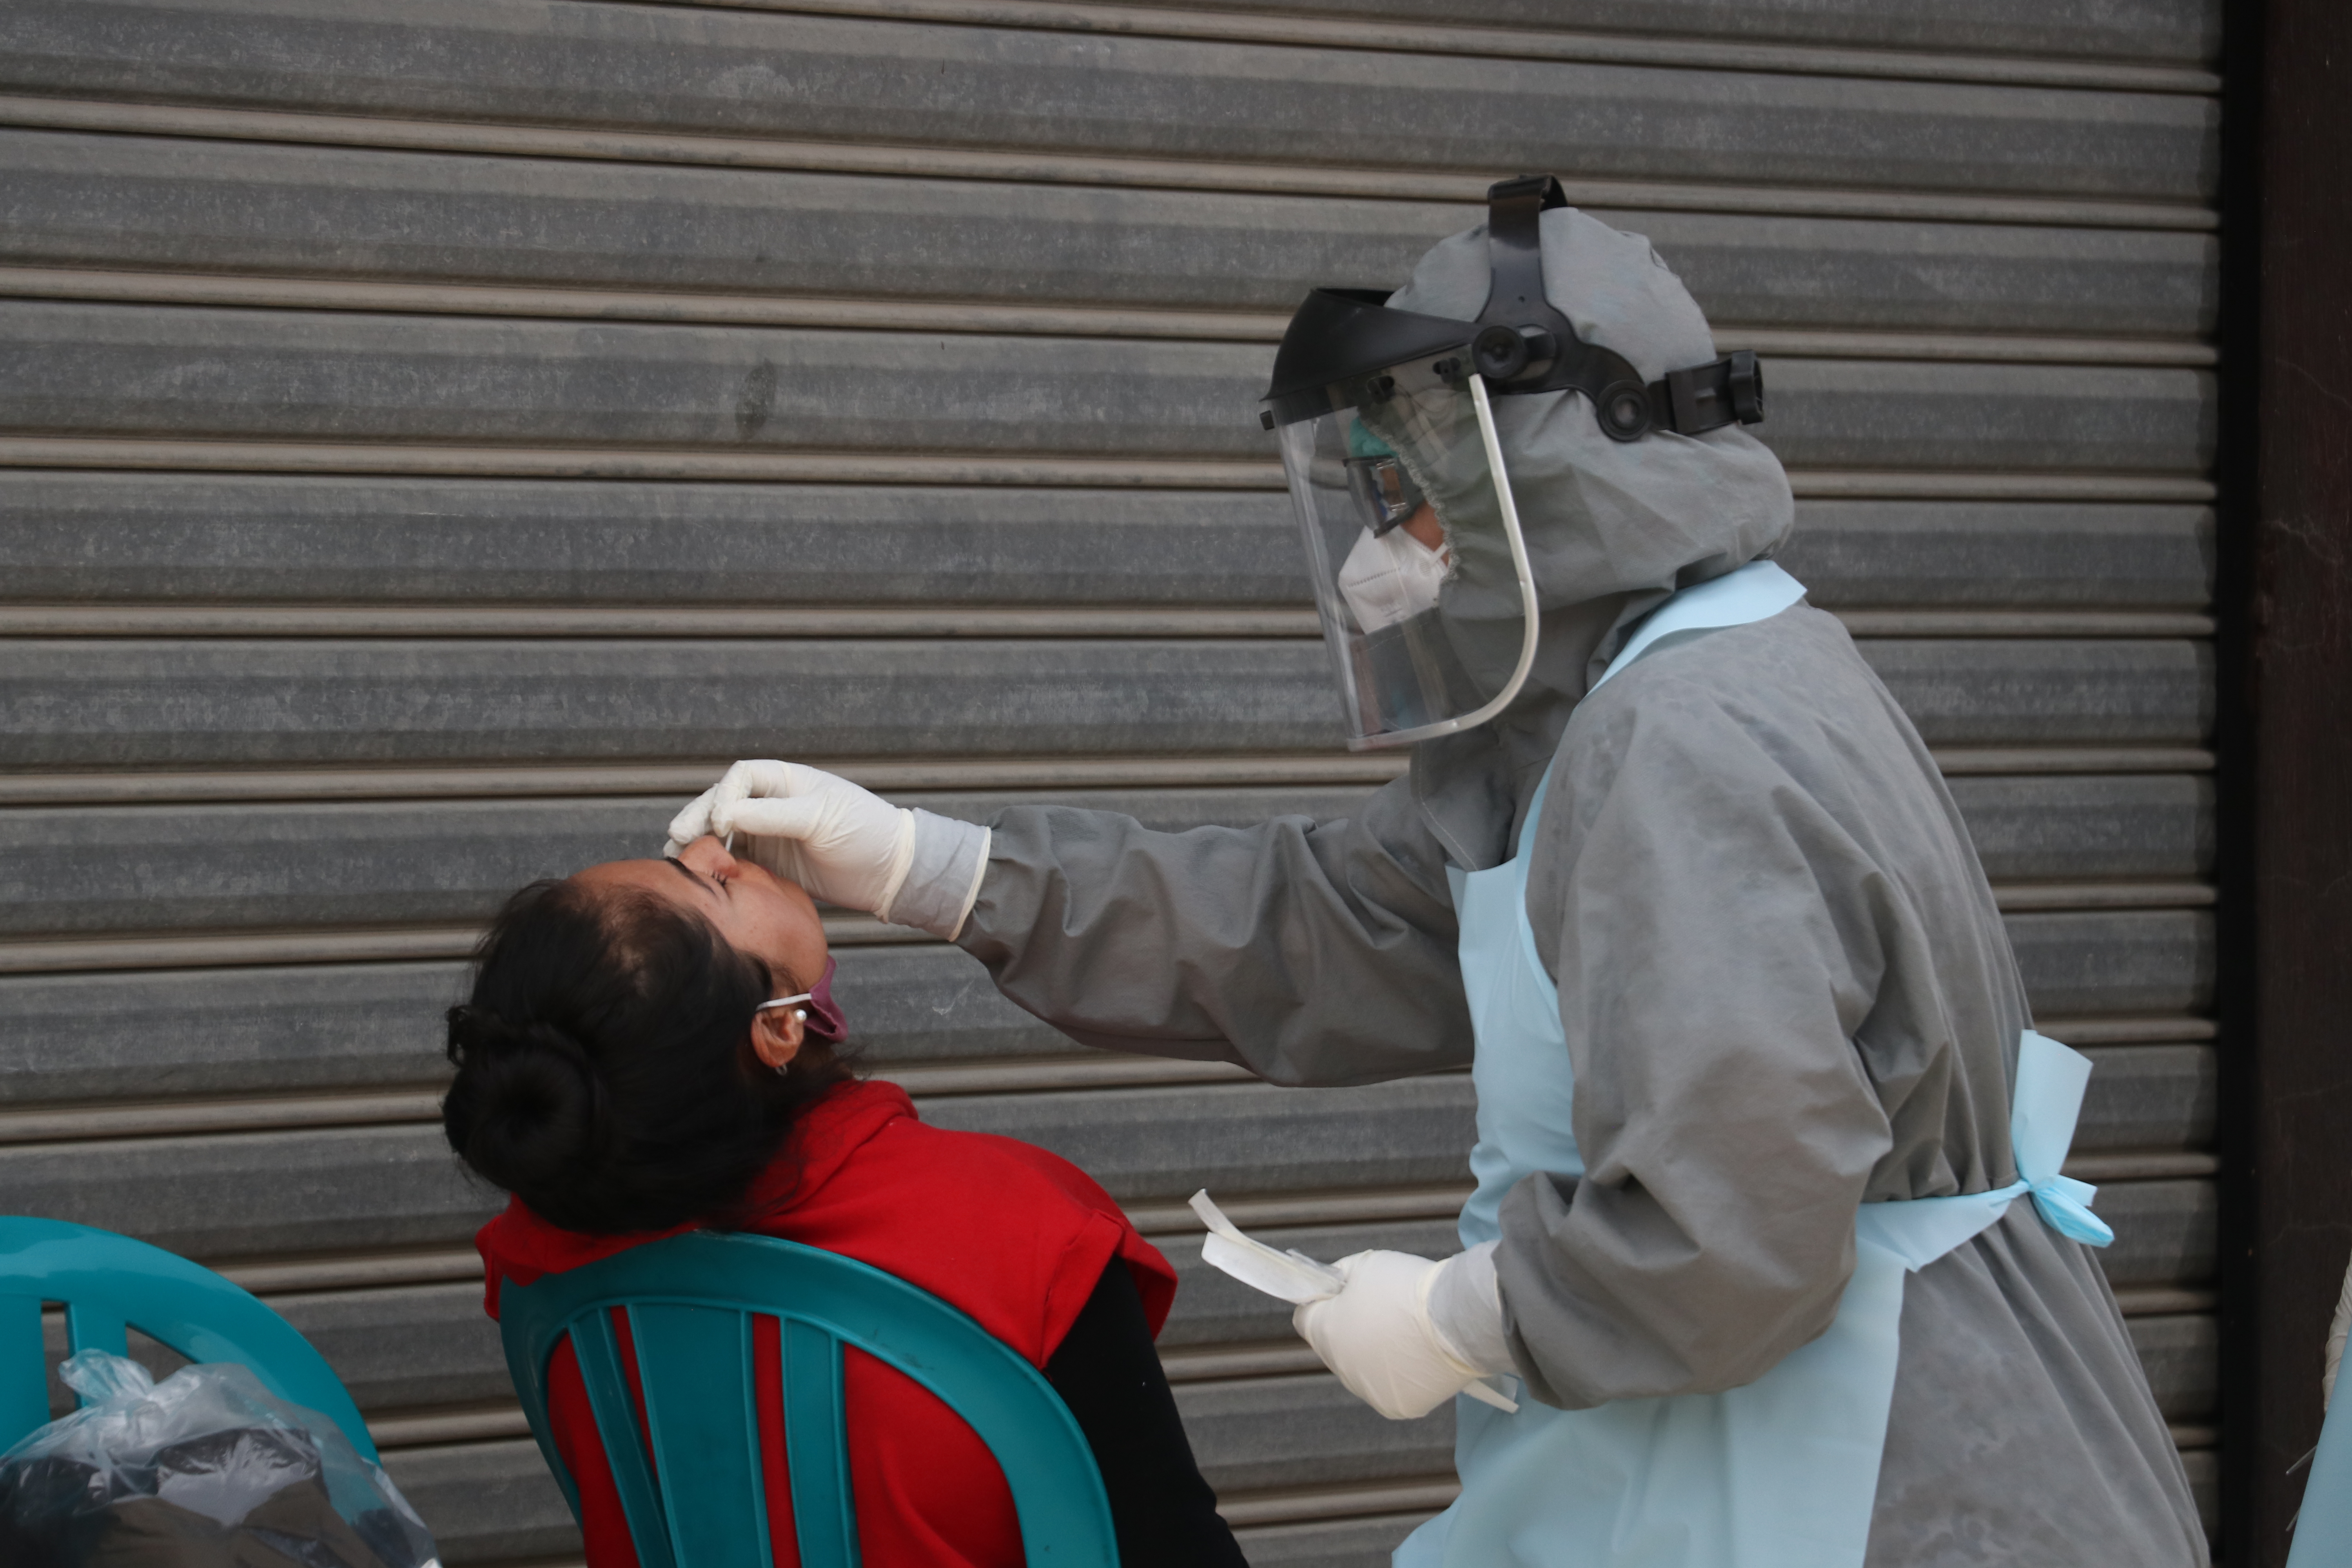 Los hisopados colectivos no son aconsejables sin el debido protocolo, según laboratoristas. (Foto Prensa Libre: Raúl Juárez)